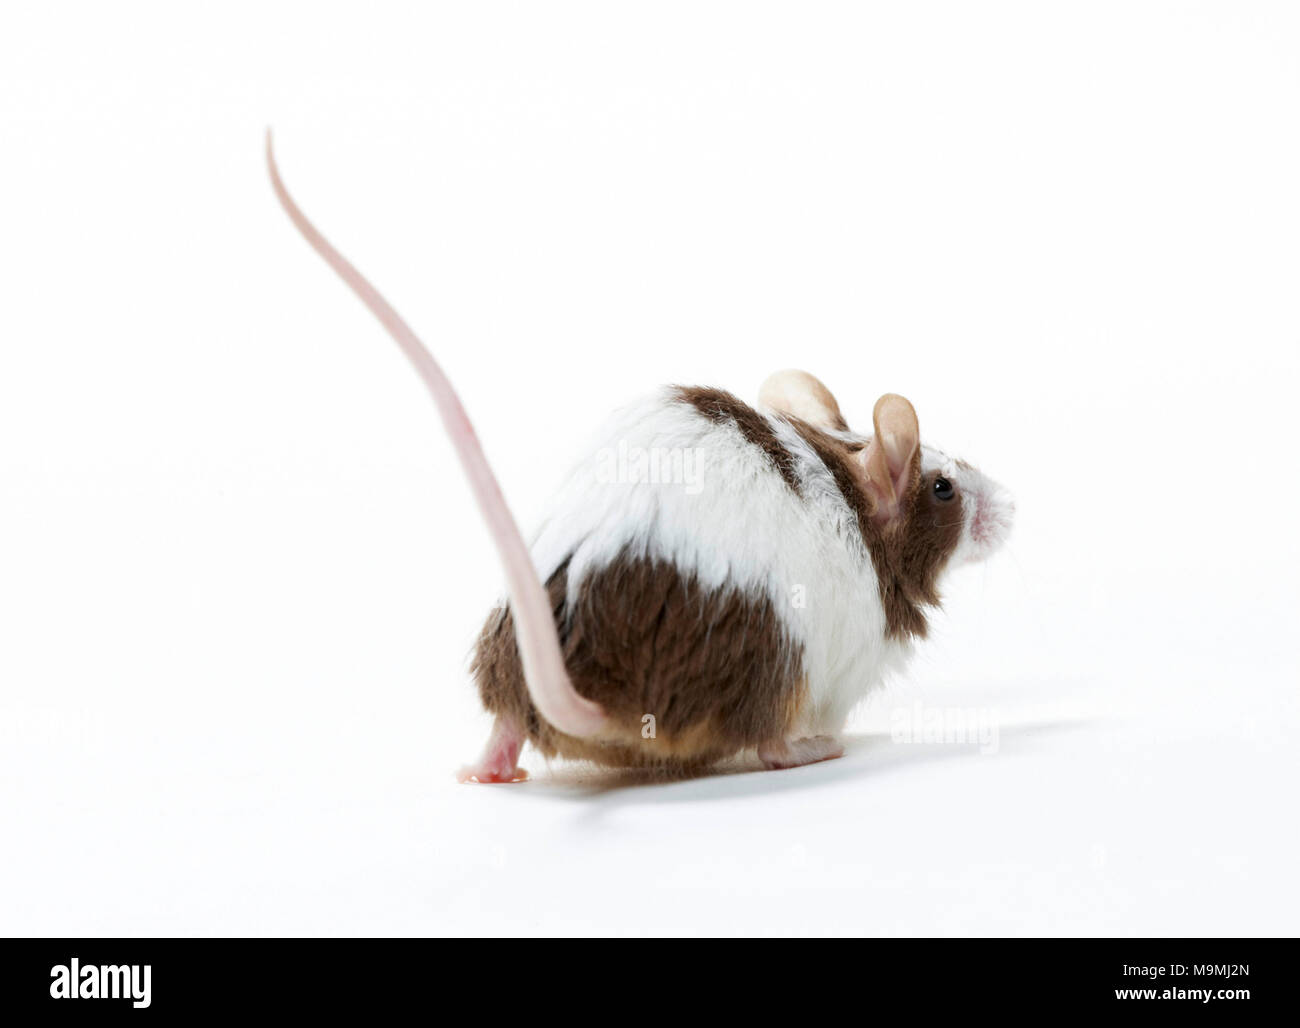 Elegante ratón. Caminar adulto bicolor, visto desde la parte trasera. Studio picture contra un fondo blanco. Foto de stock